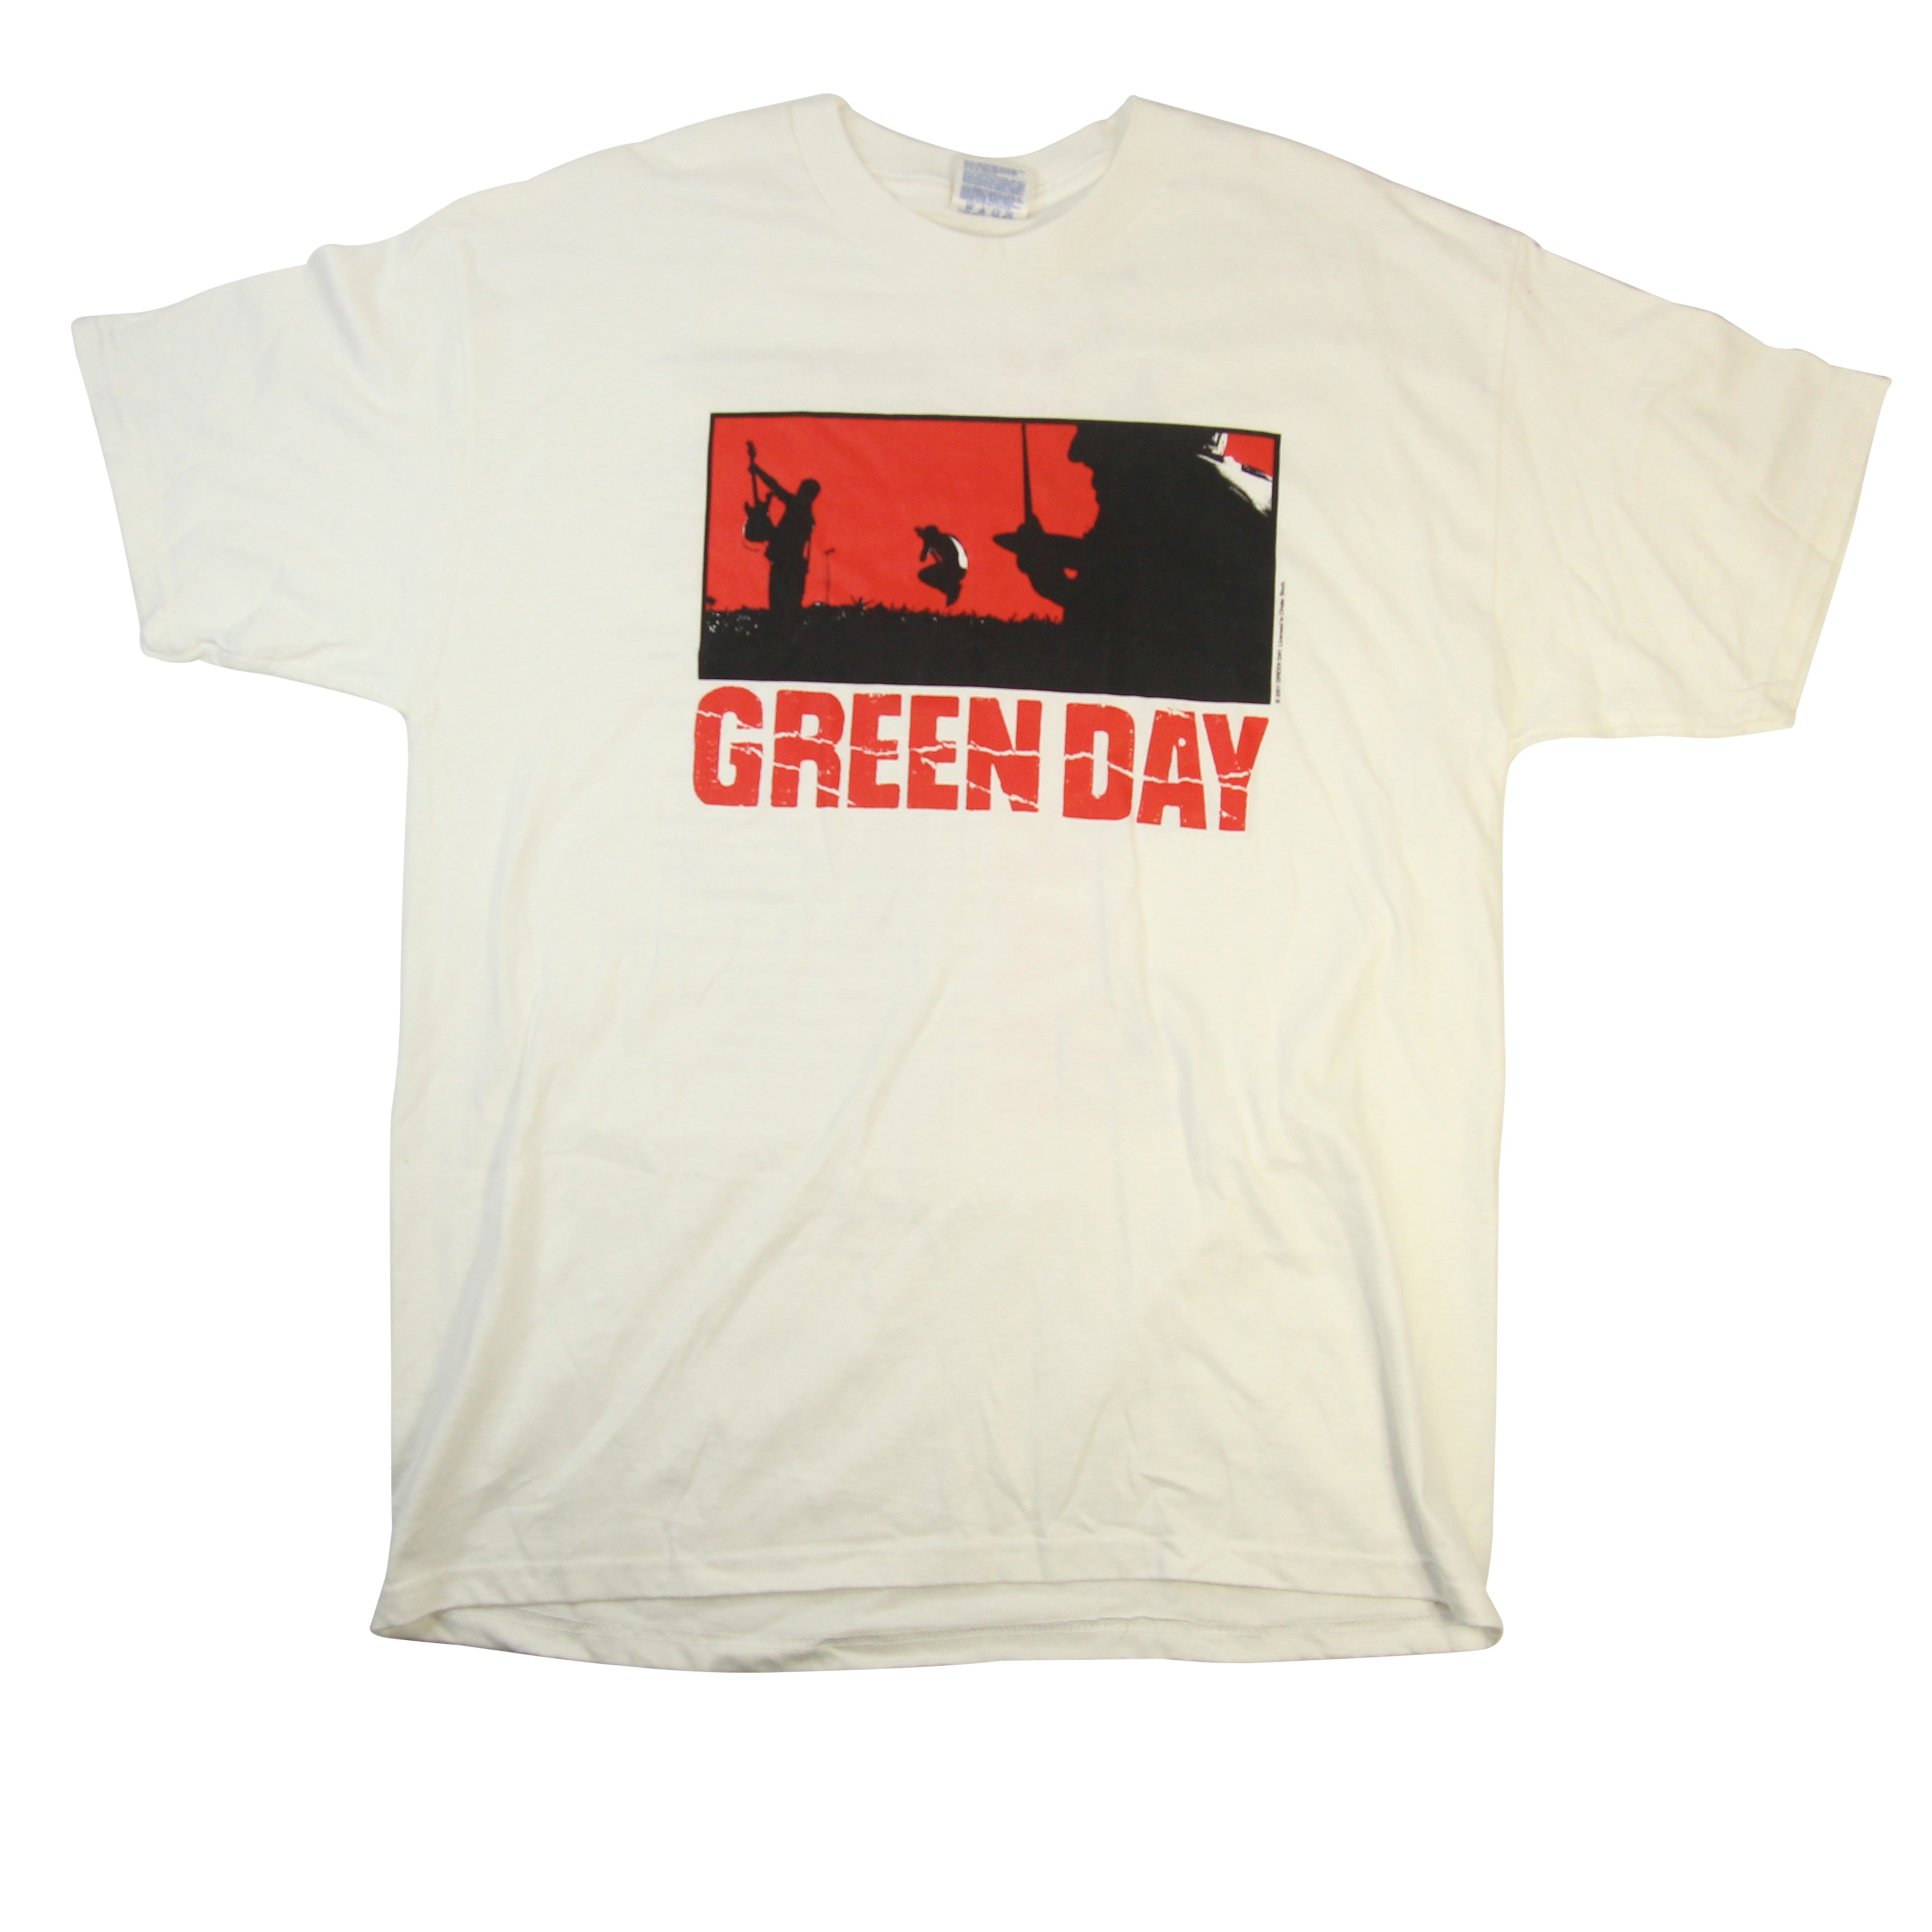 Vintage Green Day Shirt / Warning / Punk Rock / Tour Shirt